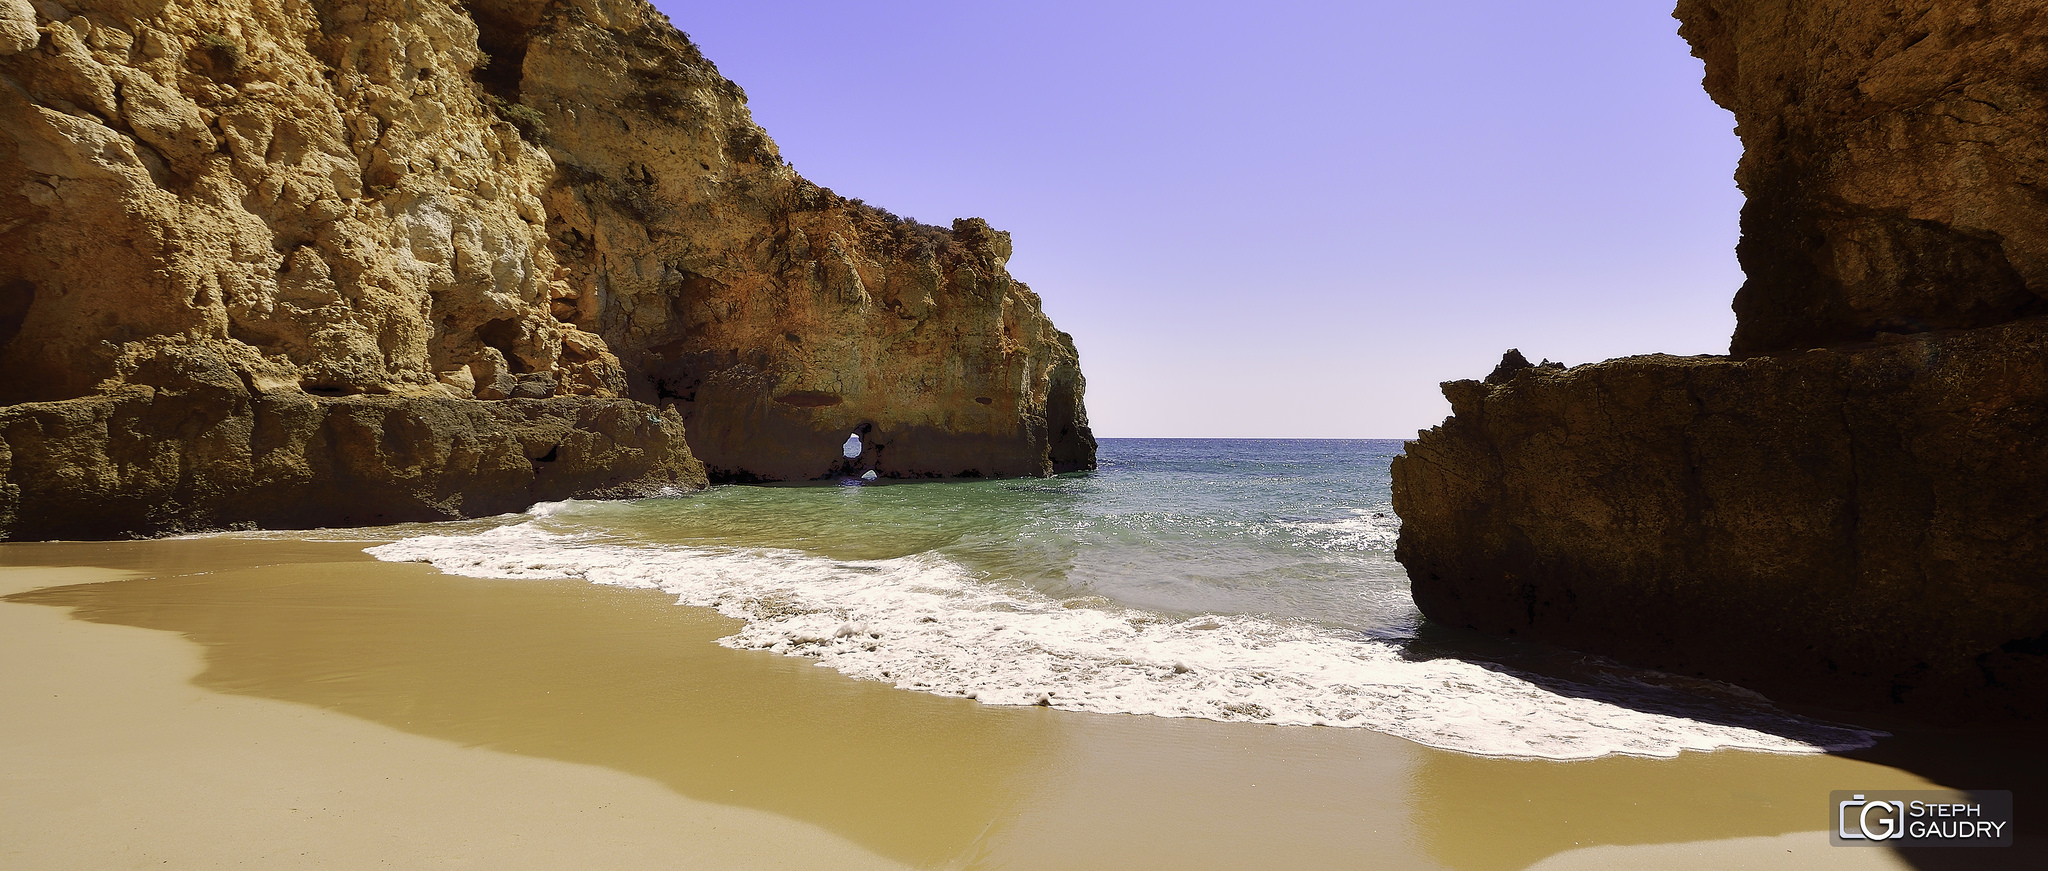 Algarve / As praias de sonho do Algarve